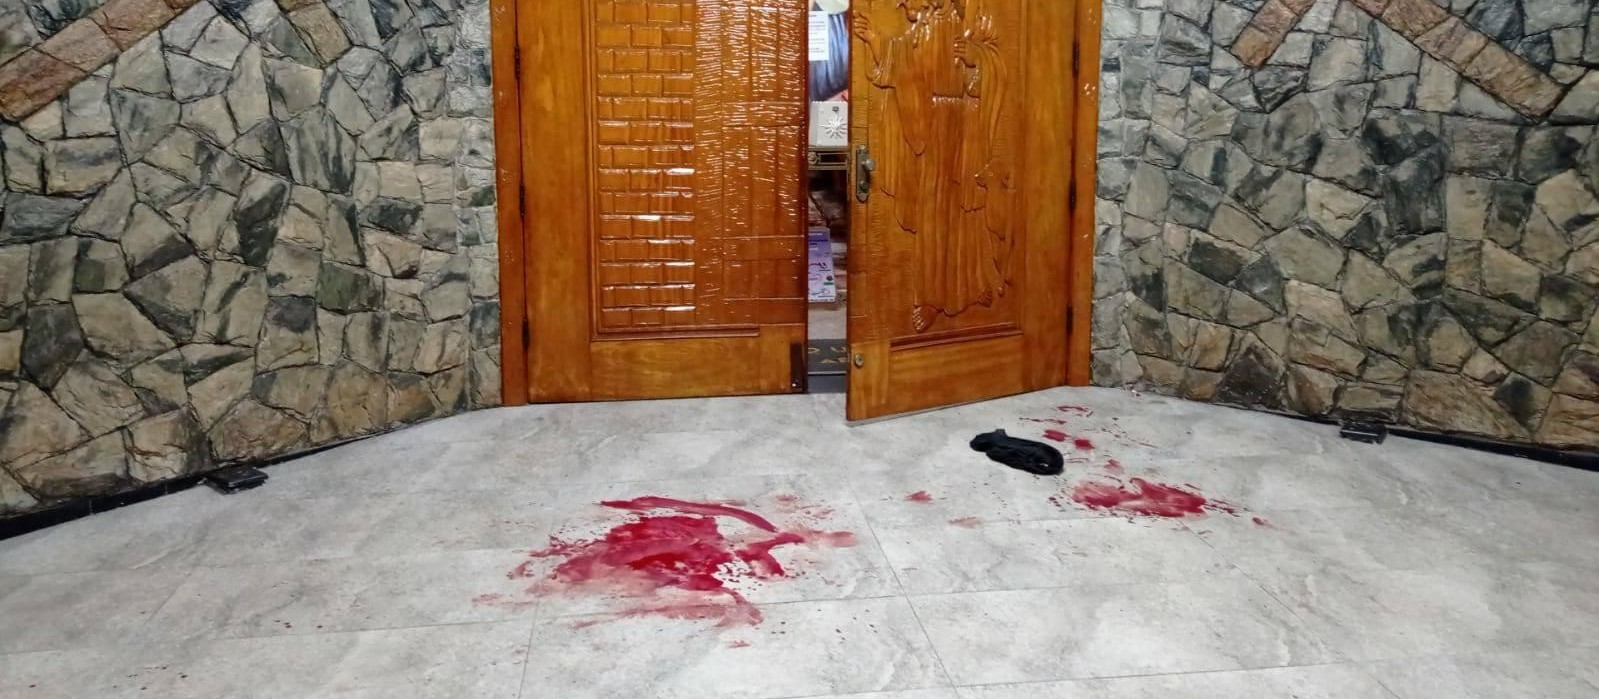 Homem é agredido na porta de igreja em Maringá, diz paróquia